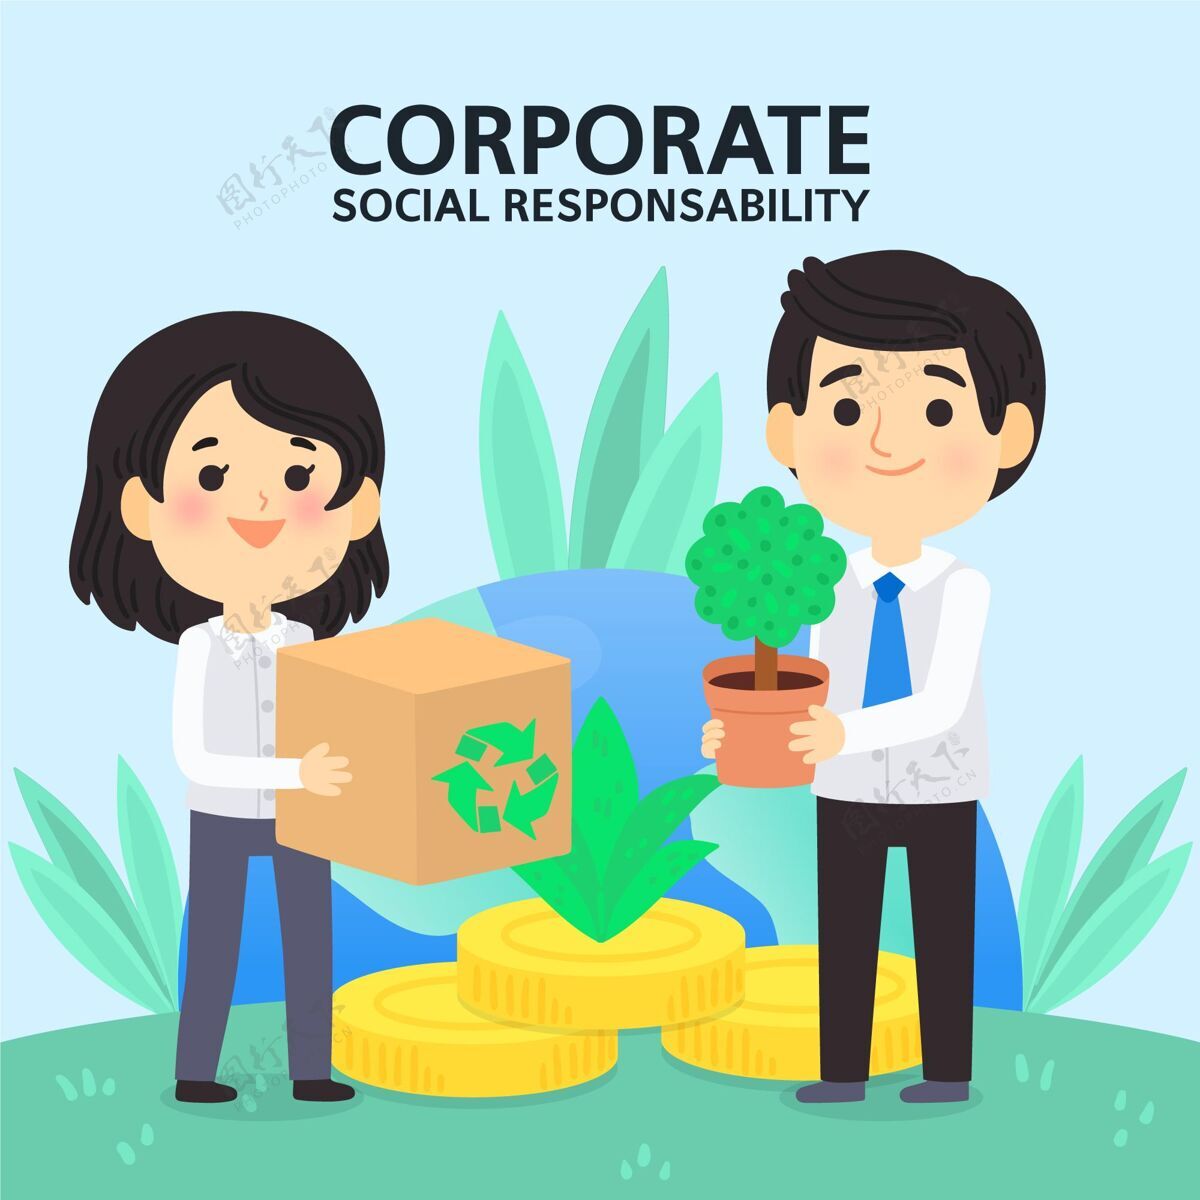 企业手绘csr概念图道德企业社会责任可持续性